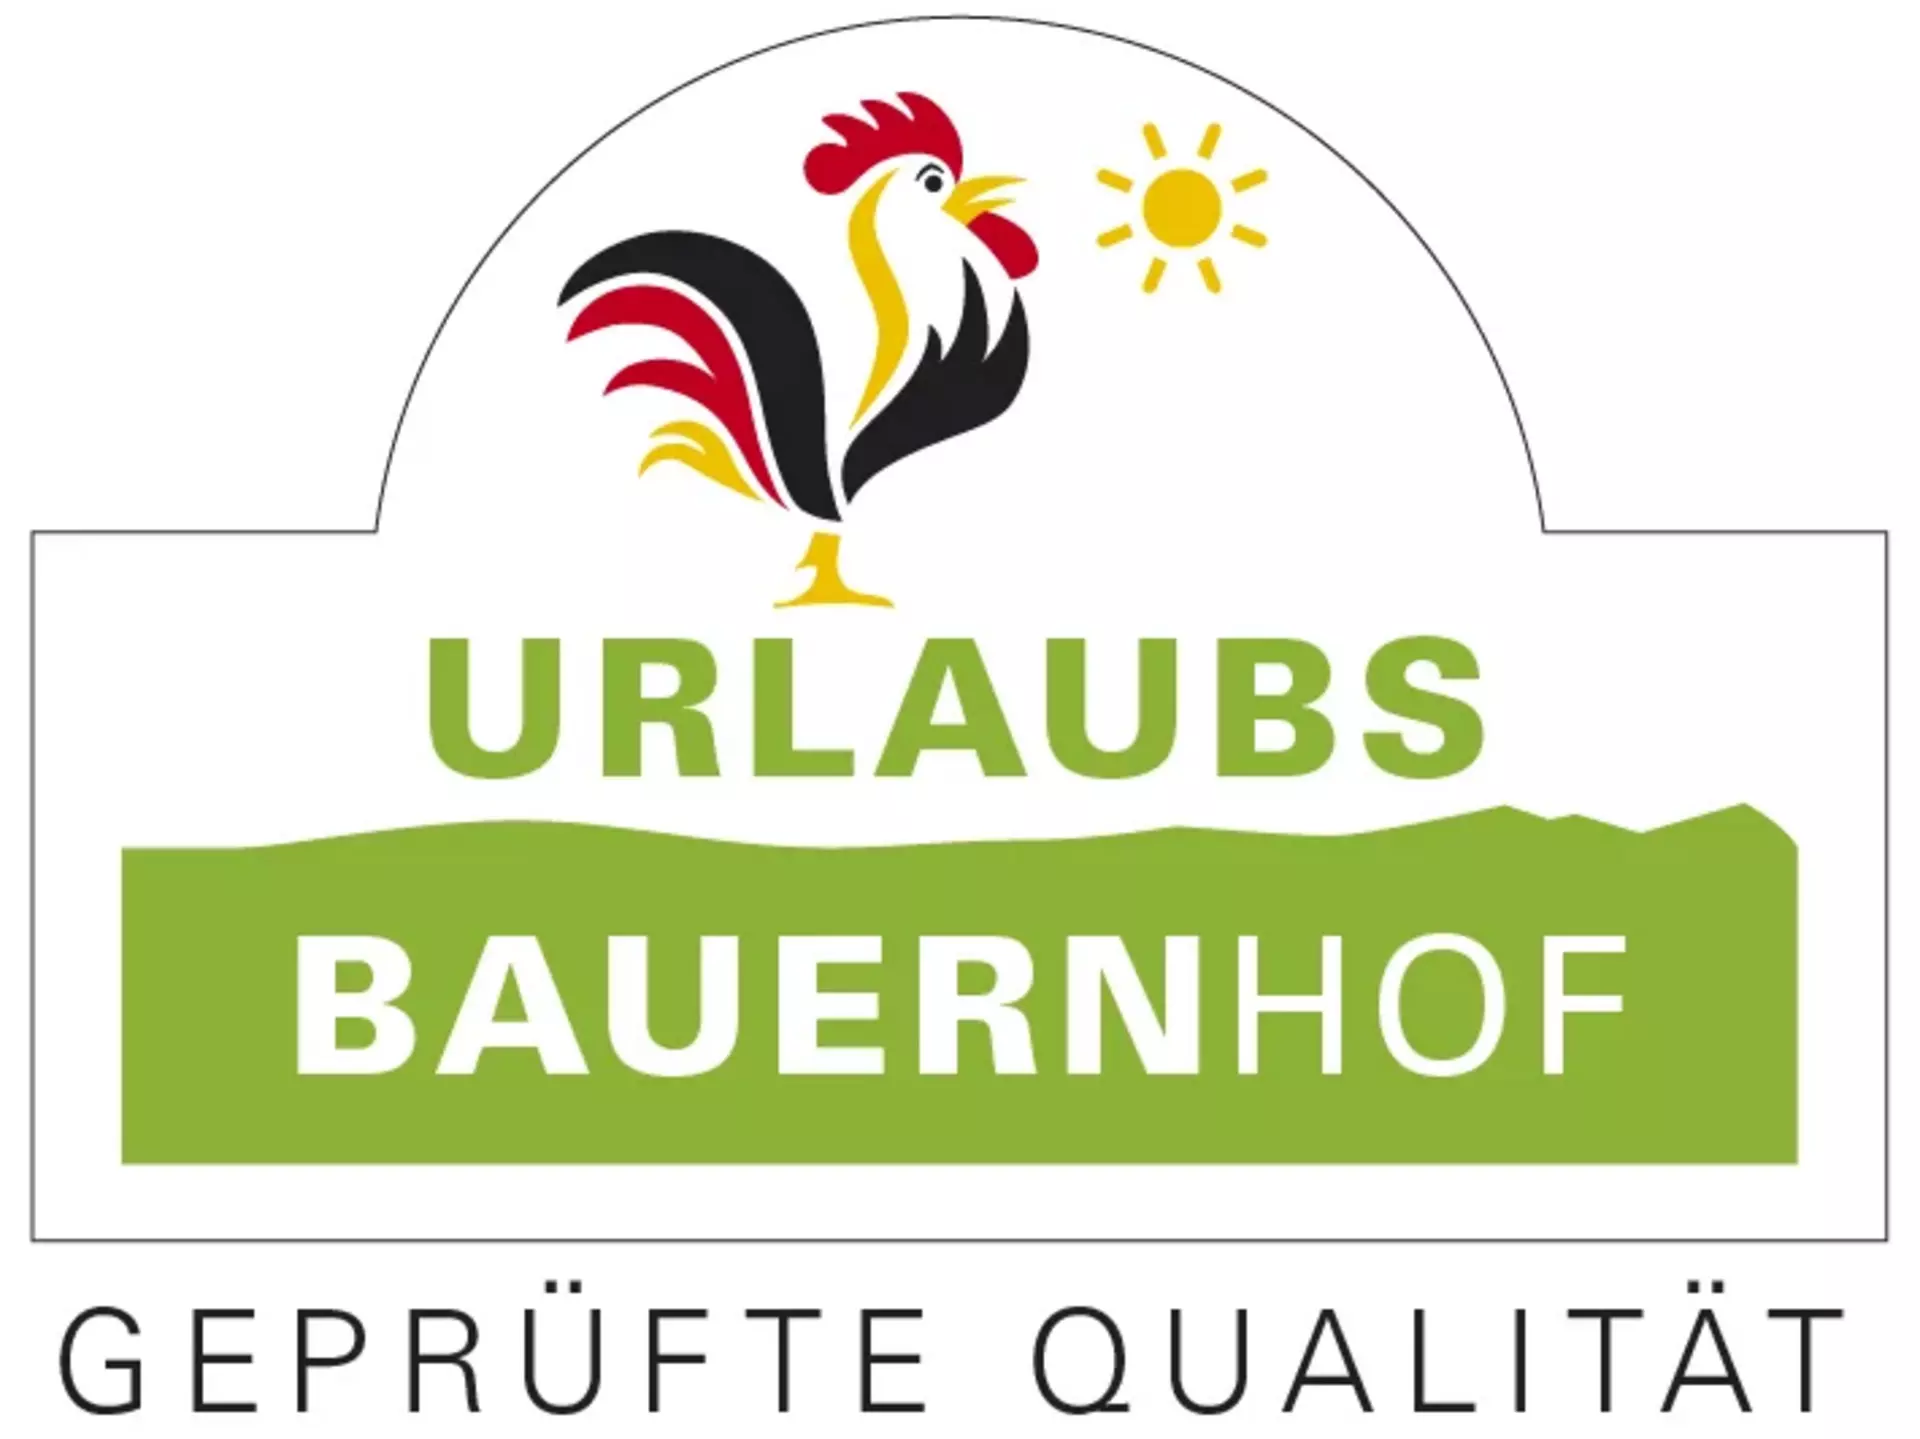 Gütesiegel "Qualitätsgeprüfter UrlaubsBauernhof" der Bundesarbeitsgemeinschaft für Urlaub auf dem Bauernhof und Landtourismus in Deutschland e. V.